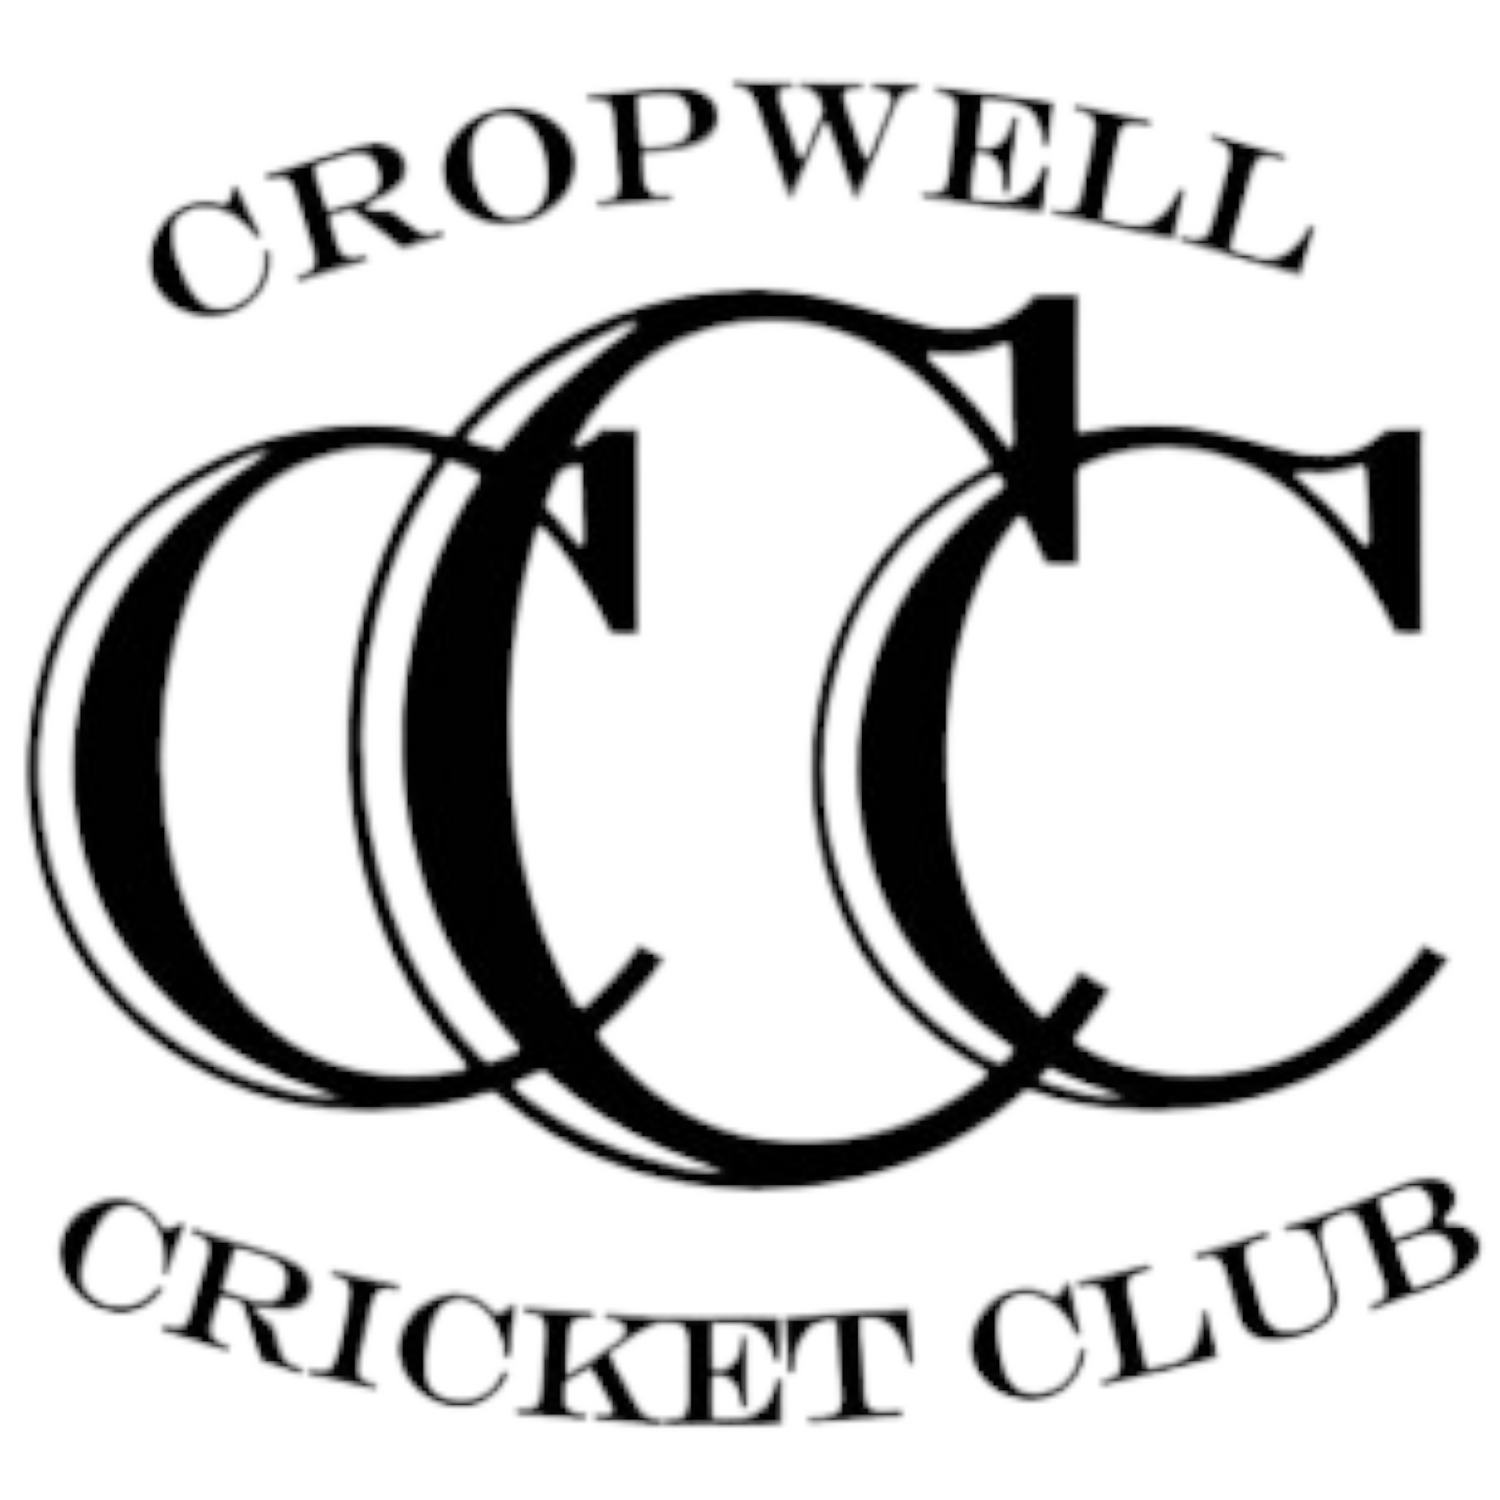 Cropwell CC